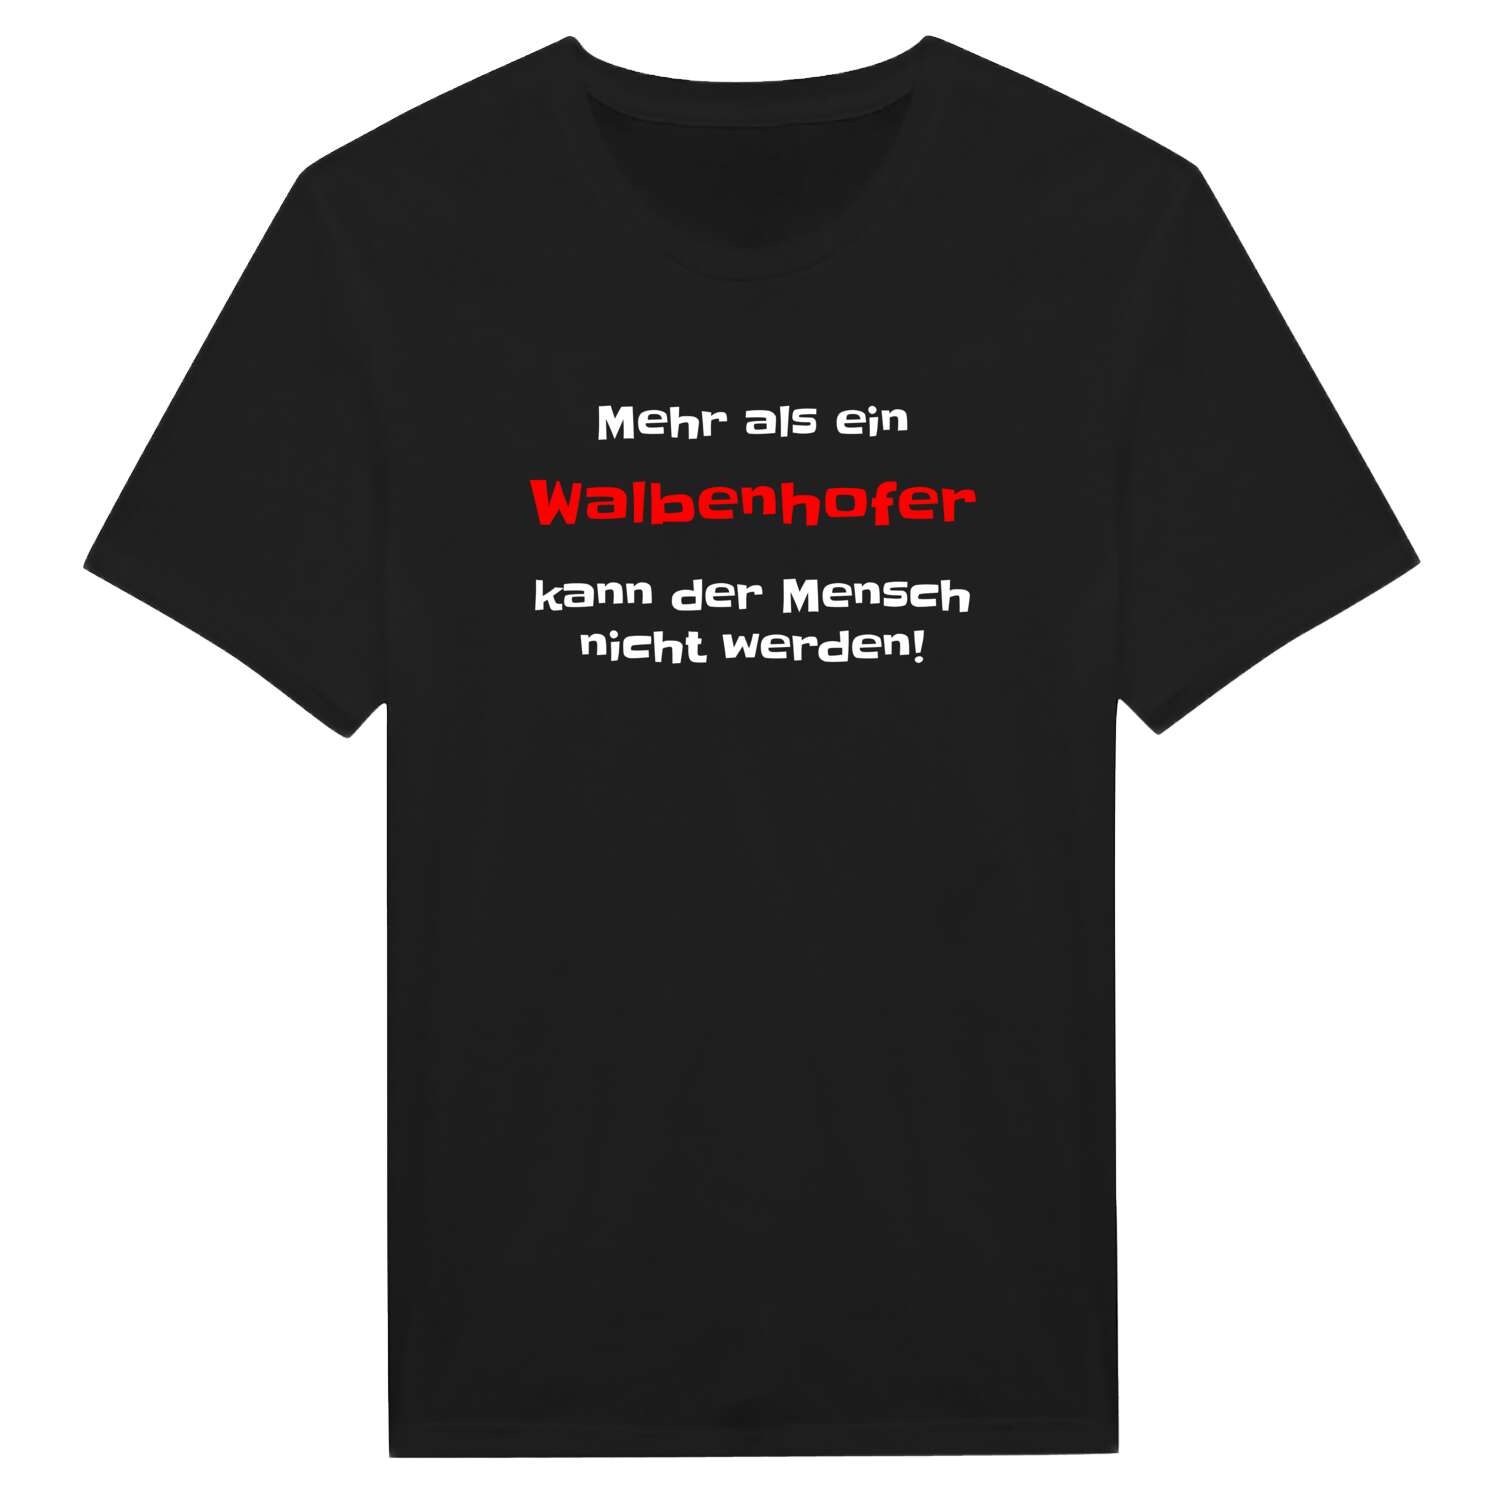 Walbenhof T-Shirt »Mehr als ein«